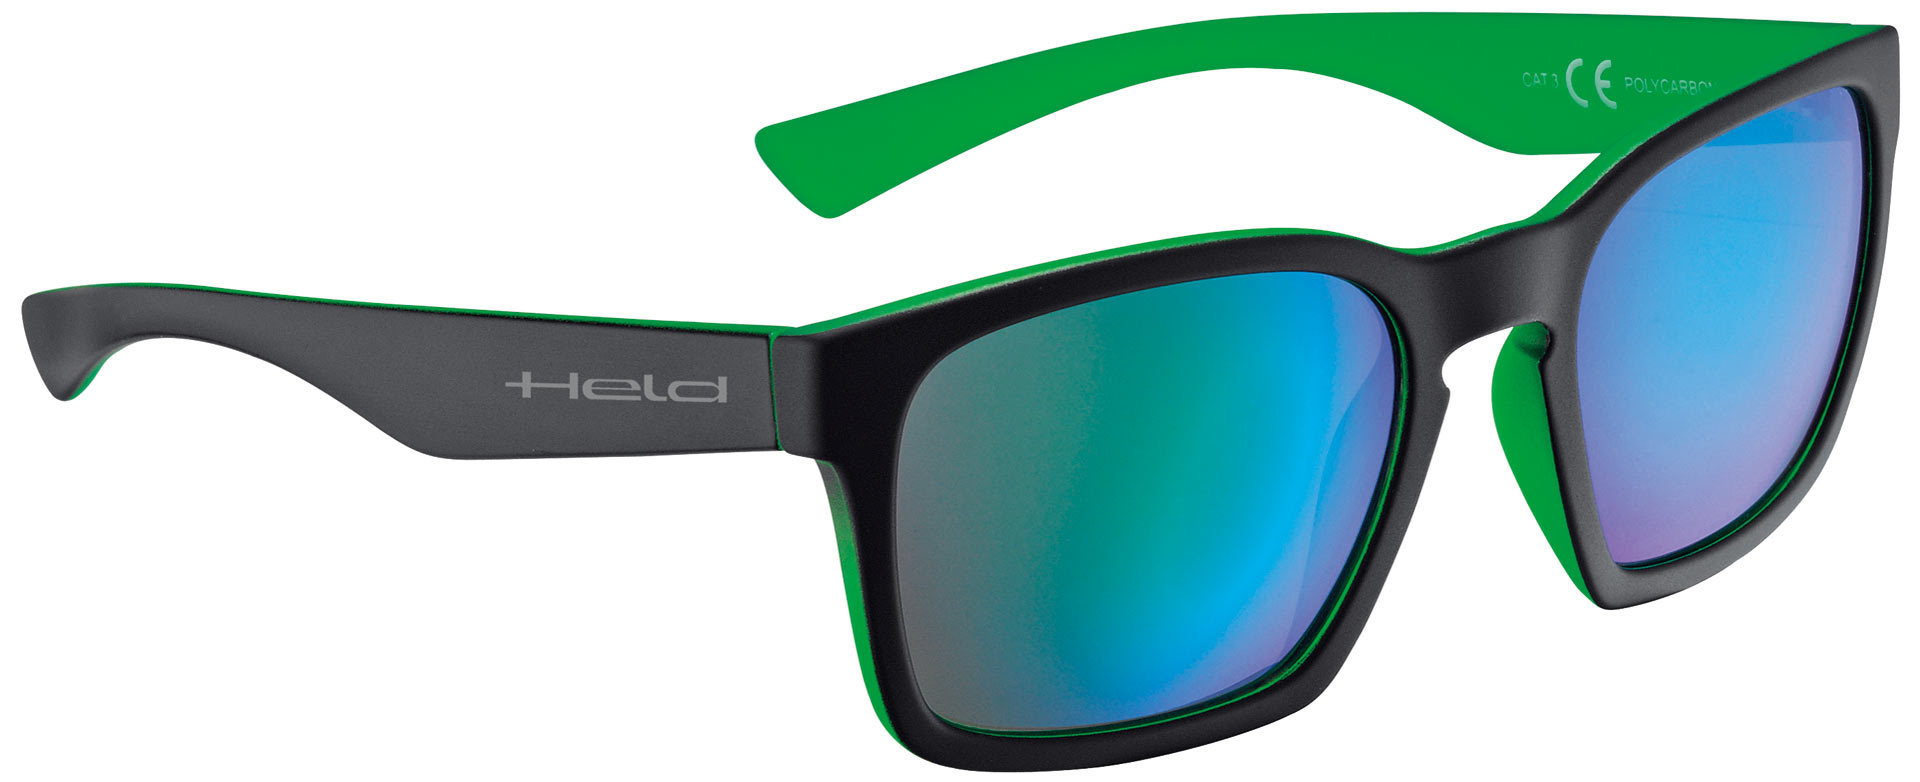 Очки Held 9740 солнцезащитные, черный/зеленый солнцезащитные очки 338011 коричневый зеленый